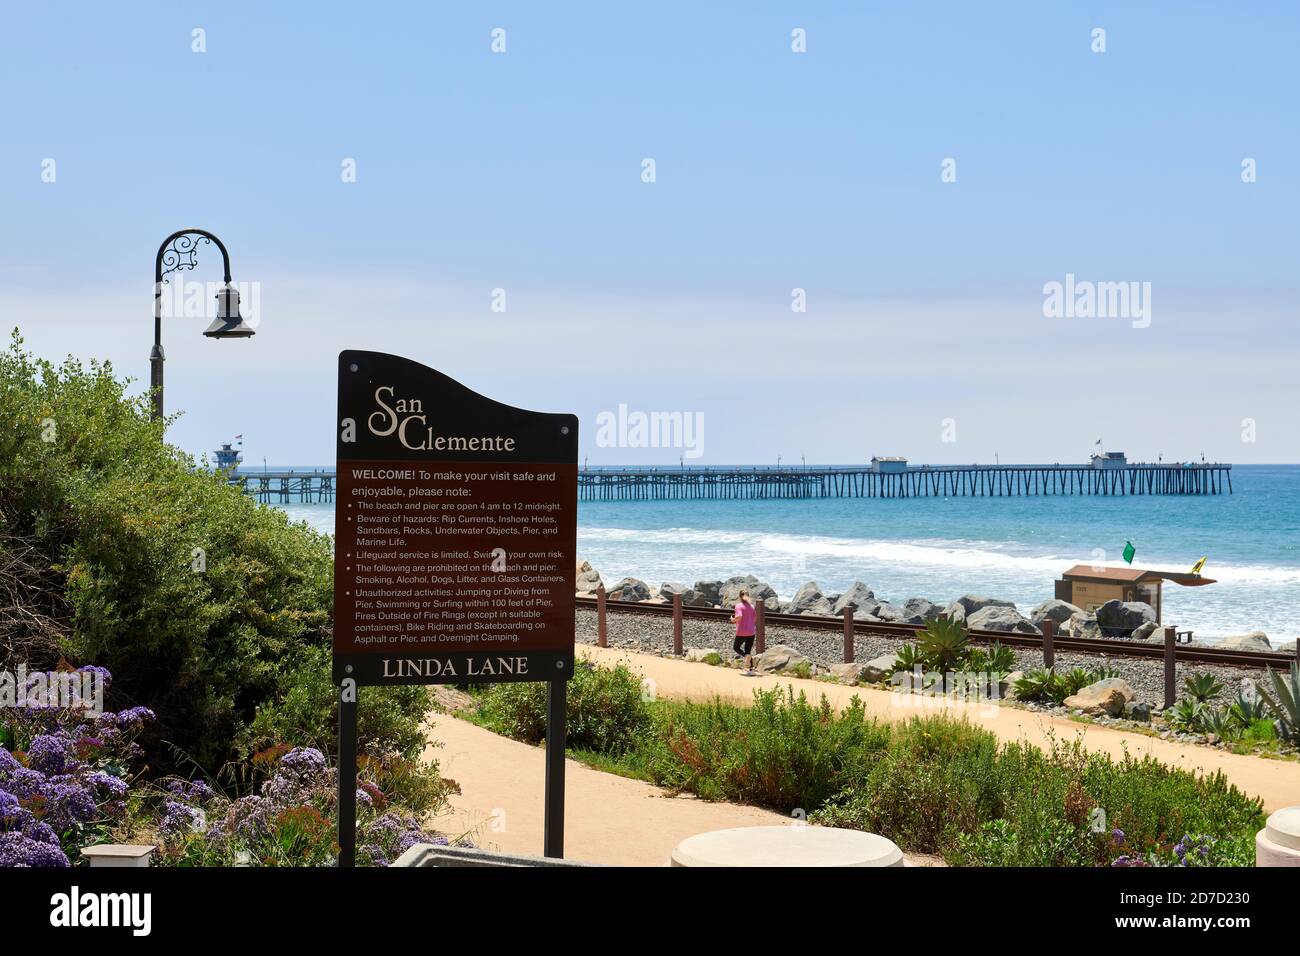 San Clemente, California, USA Stock Photo